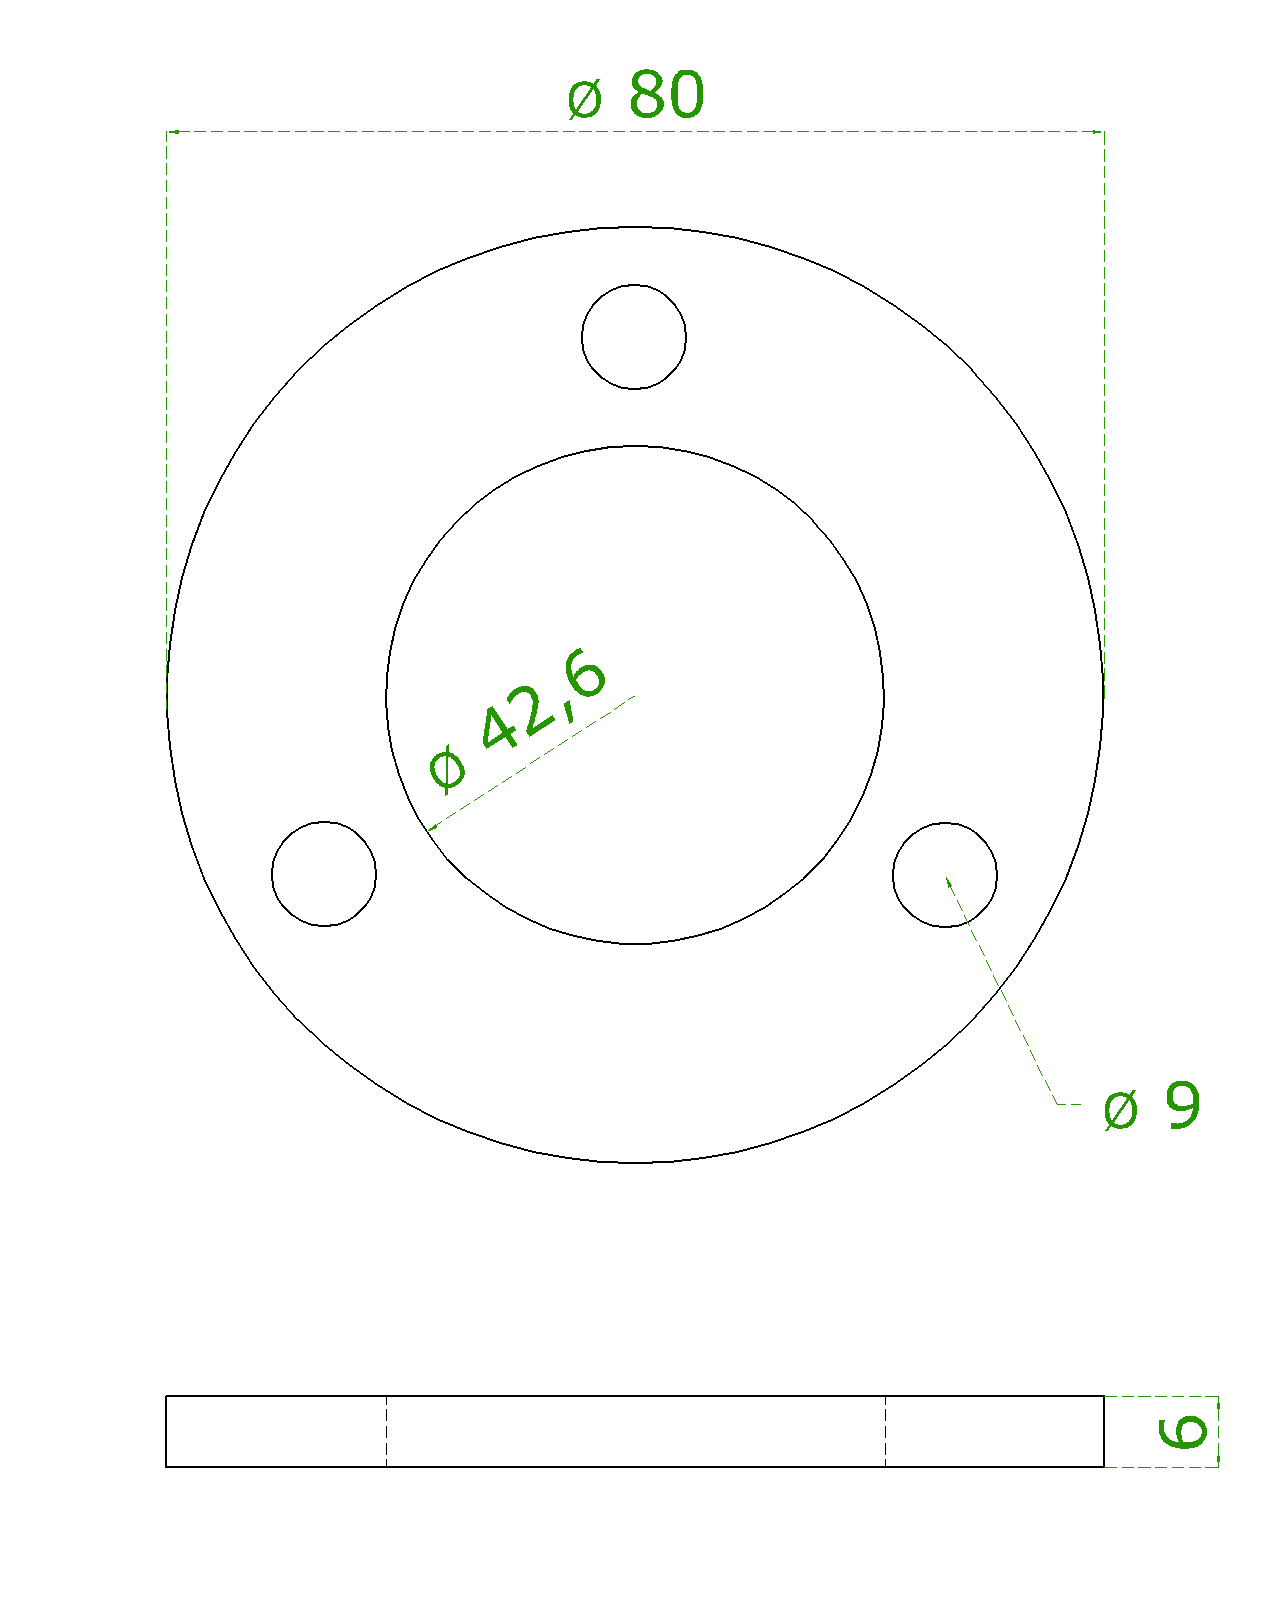 Kotevní deska (ø 80x6 mm) na trubku ø 42,4 mm, (otvor ø 42,6 mm), nerez broušená K320 / AISI304